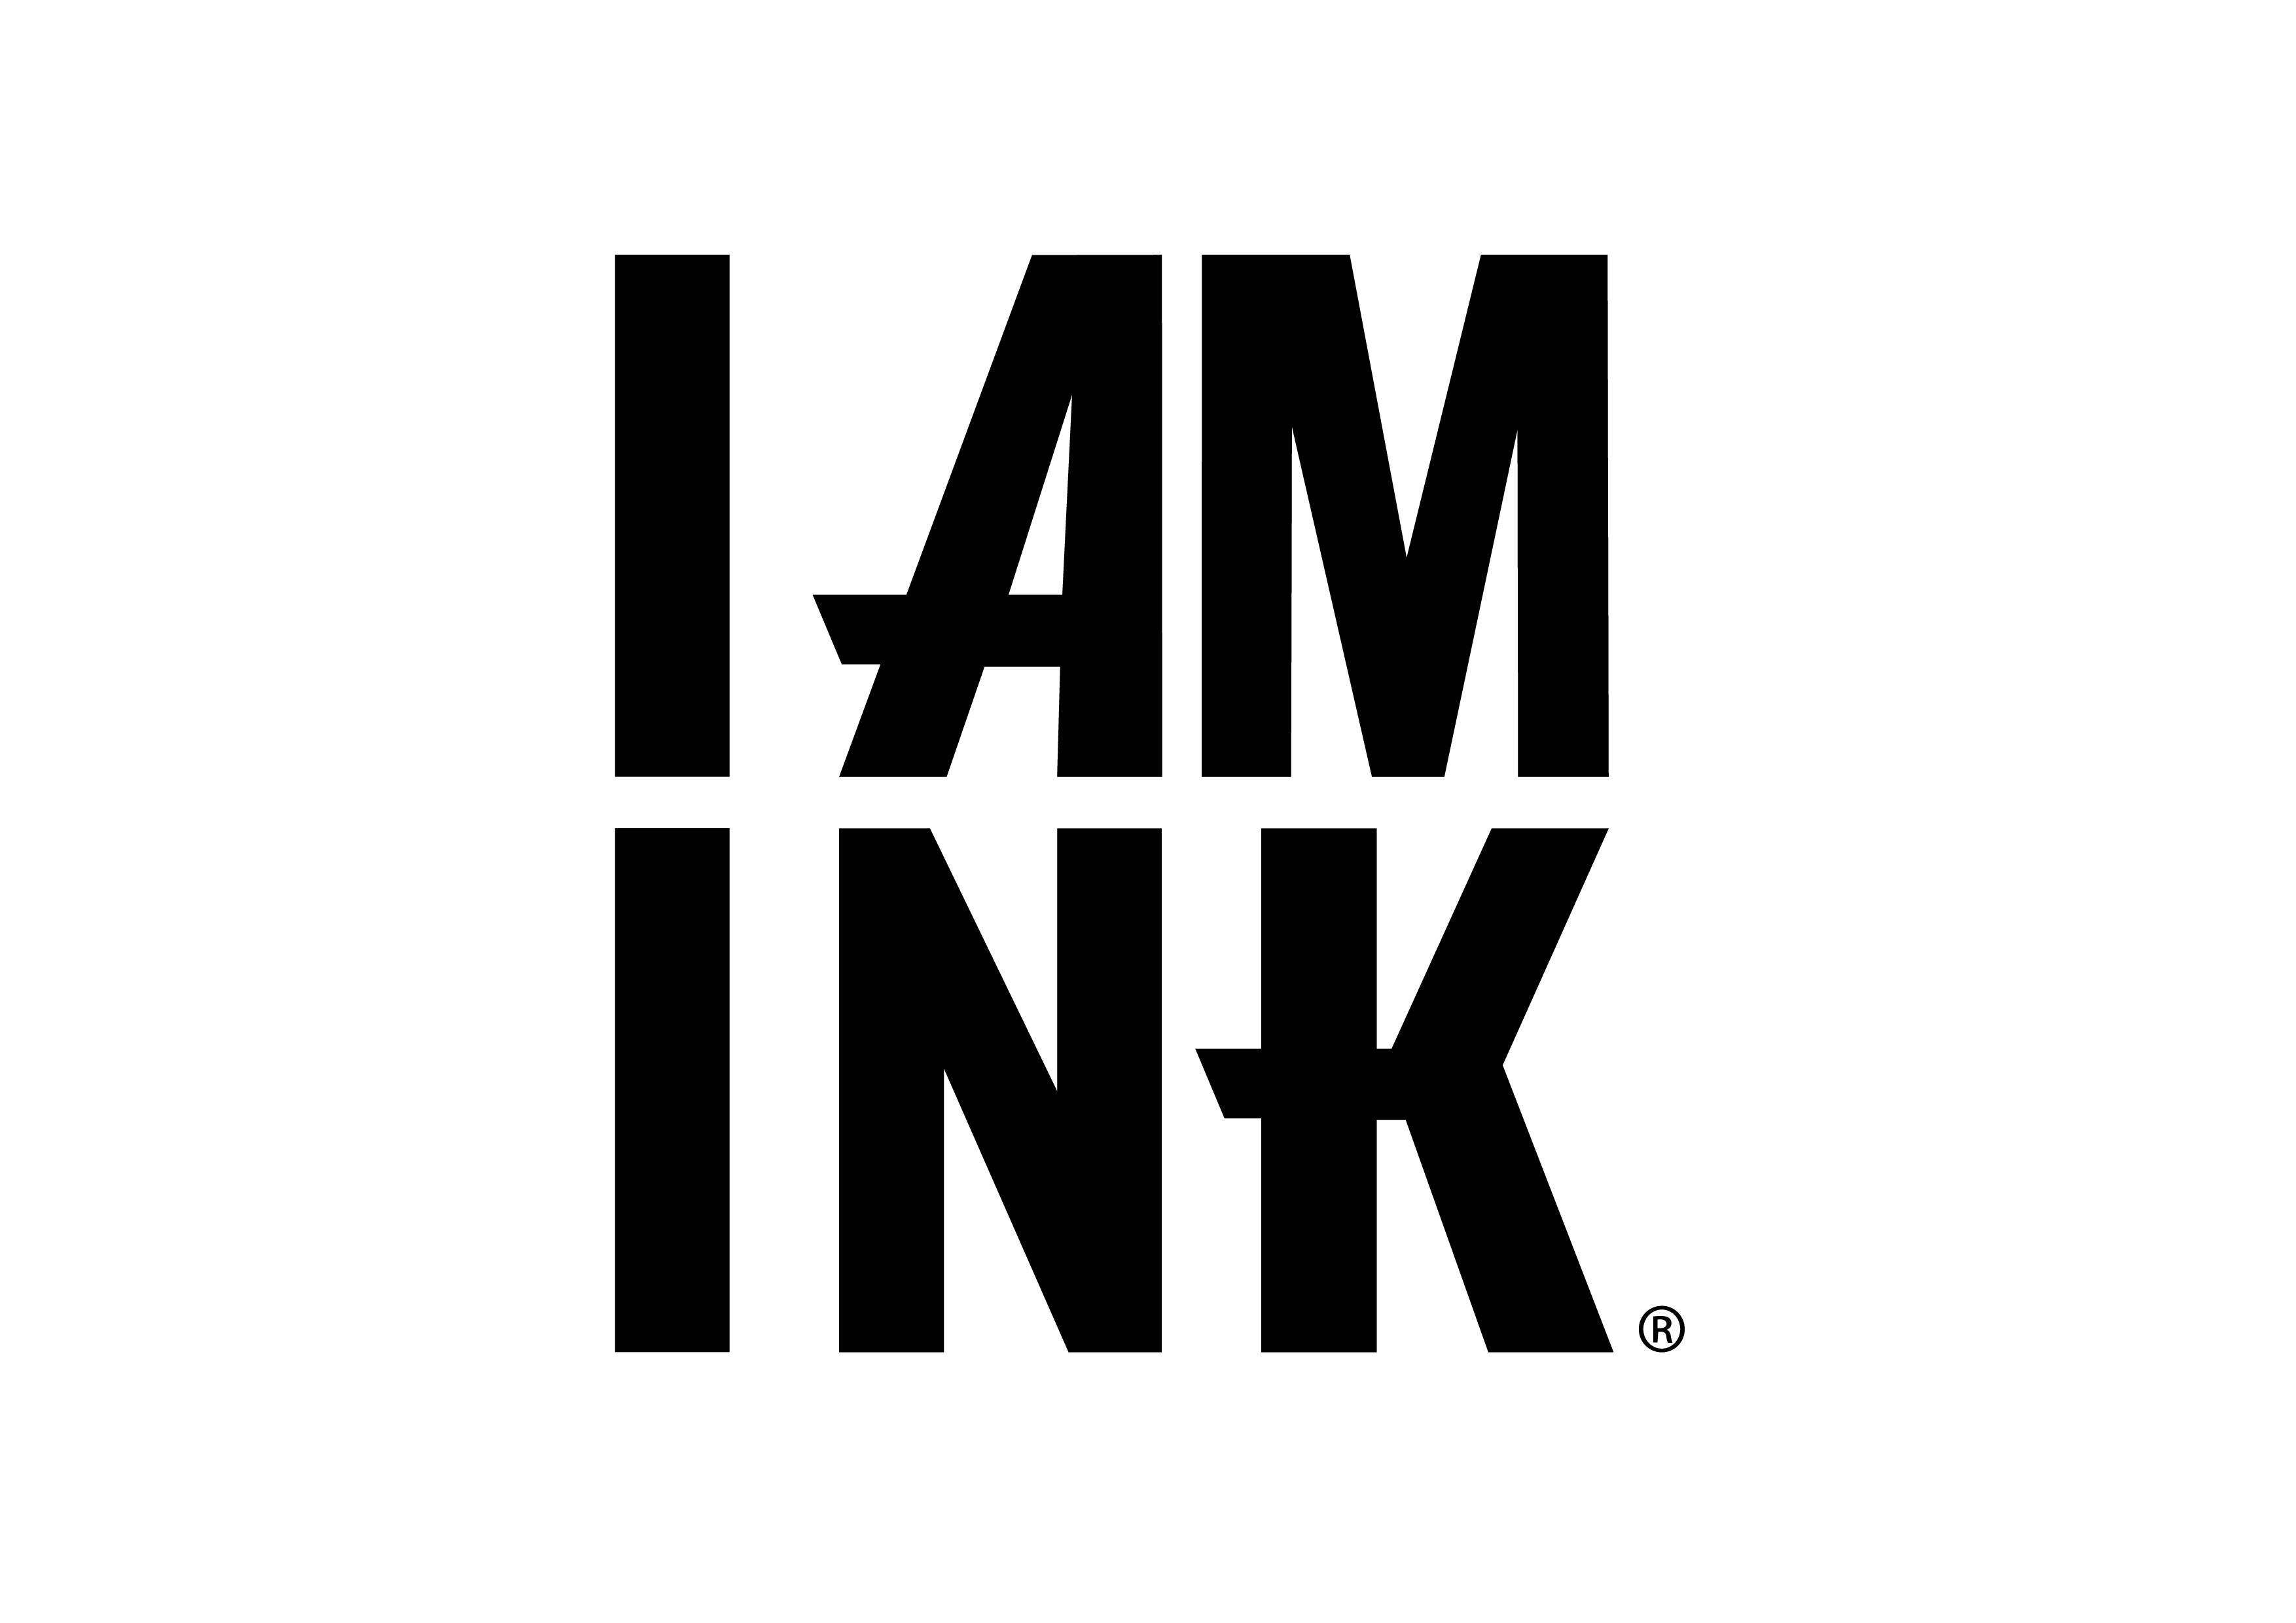 I AM INK